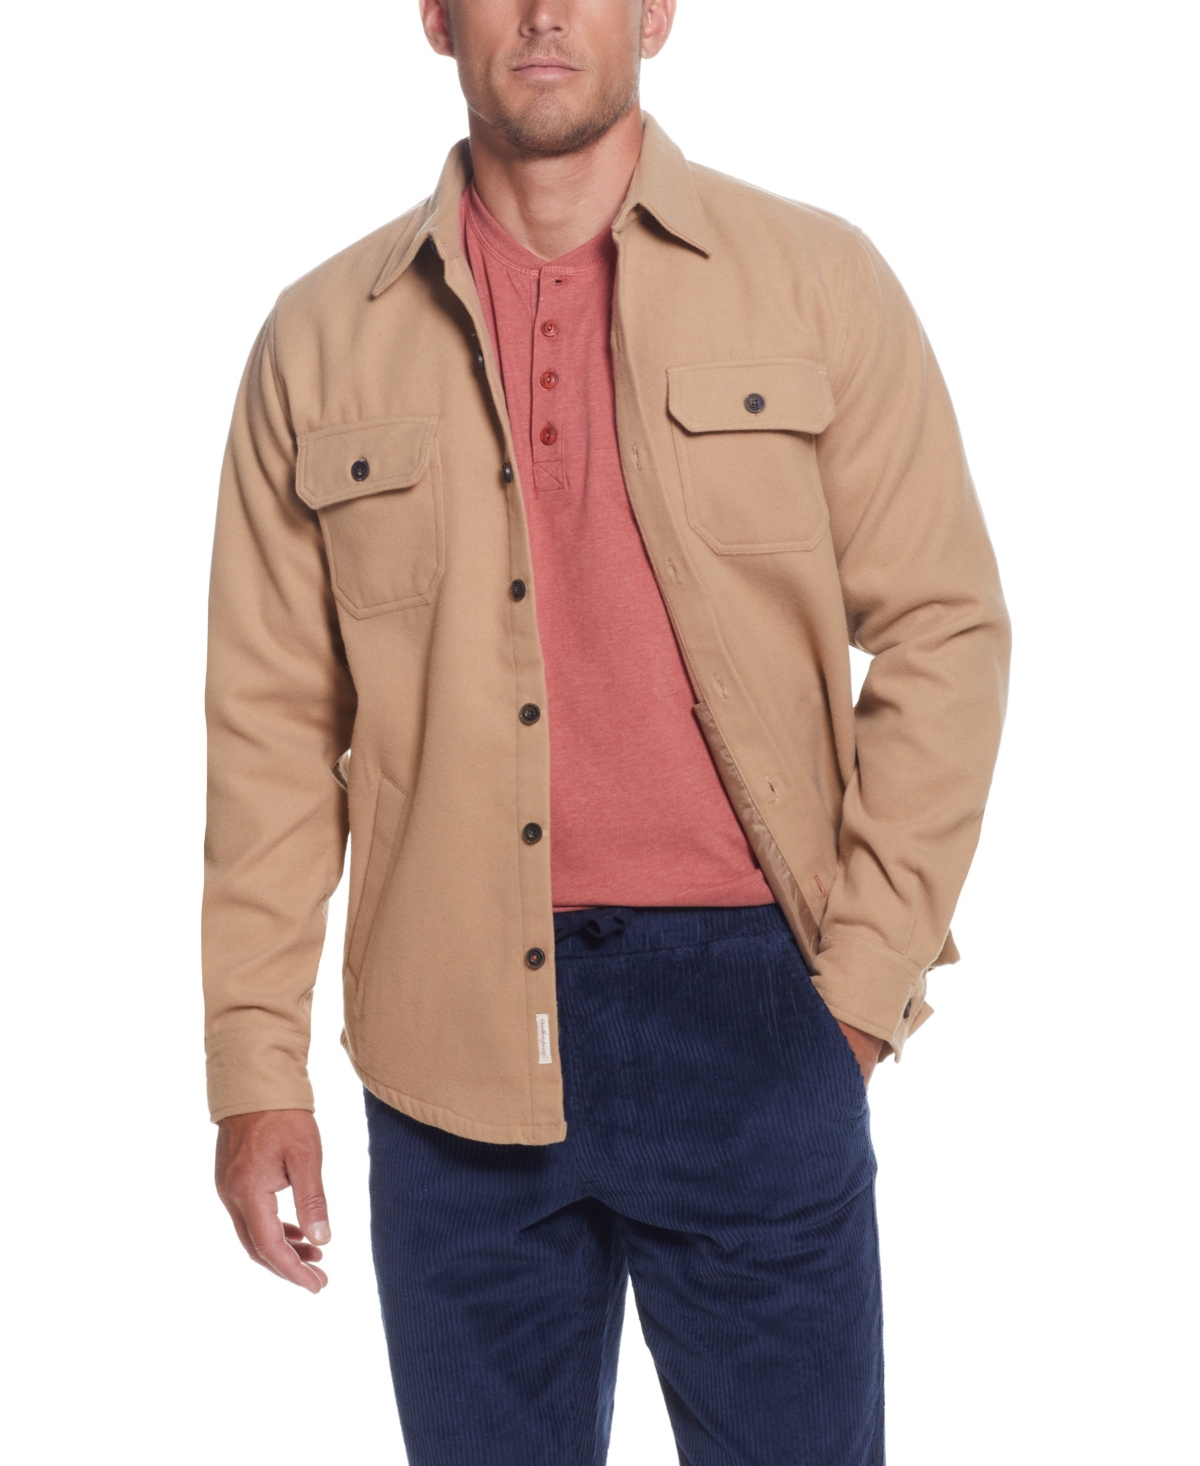 Men's Unlined Shirt Jacket - Khaki